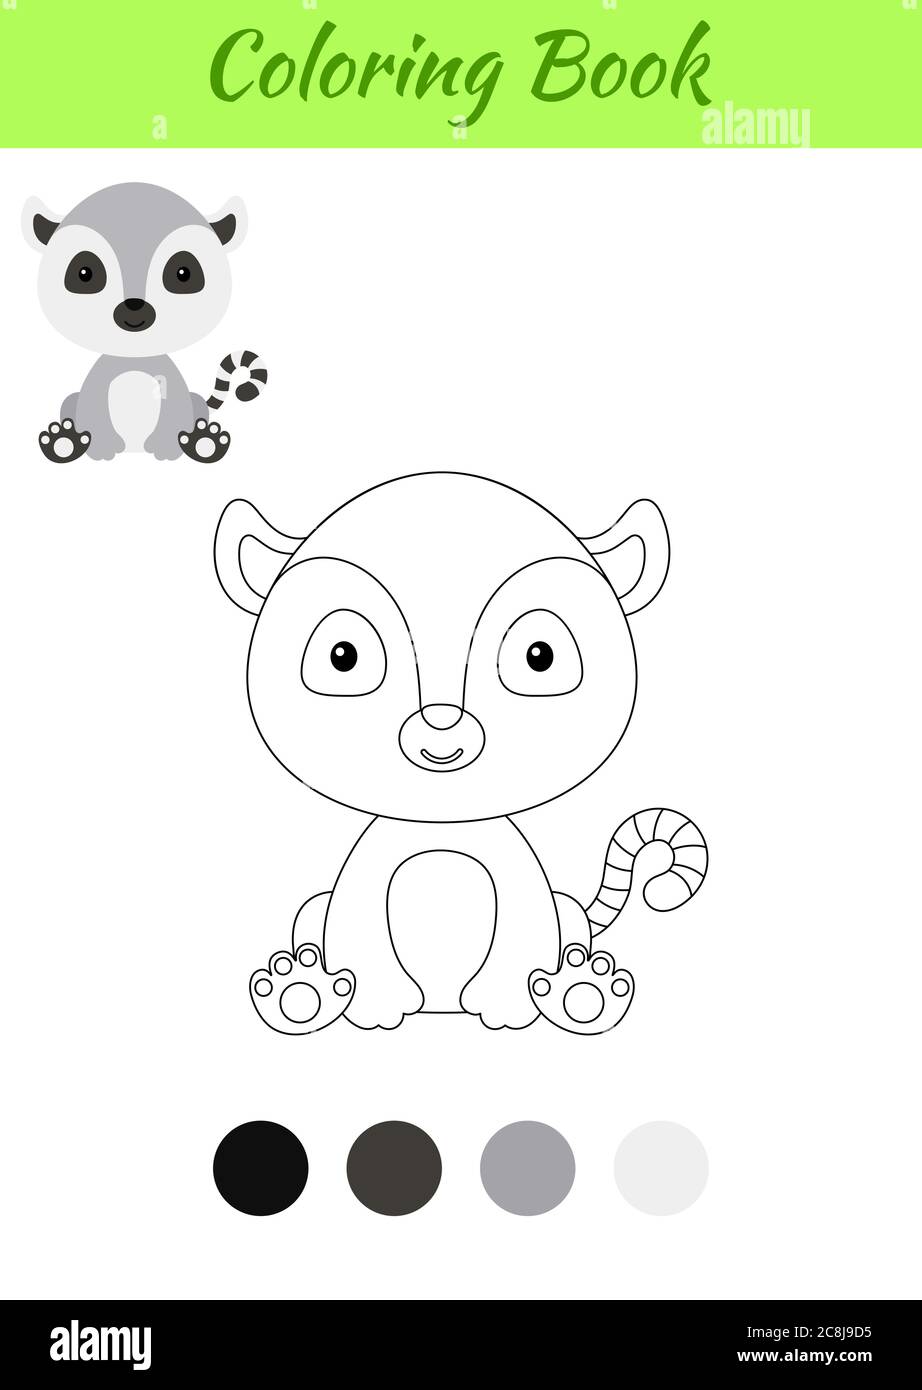 kawaii panda - Buscar con Google  Dessin kawaii panda, Dessin kawaii logo,  Dessin animaux mignons